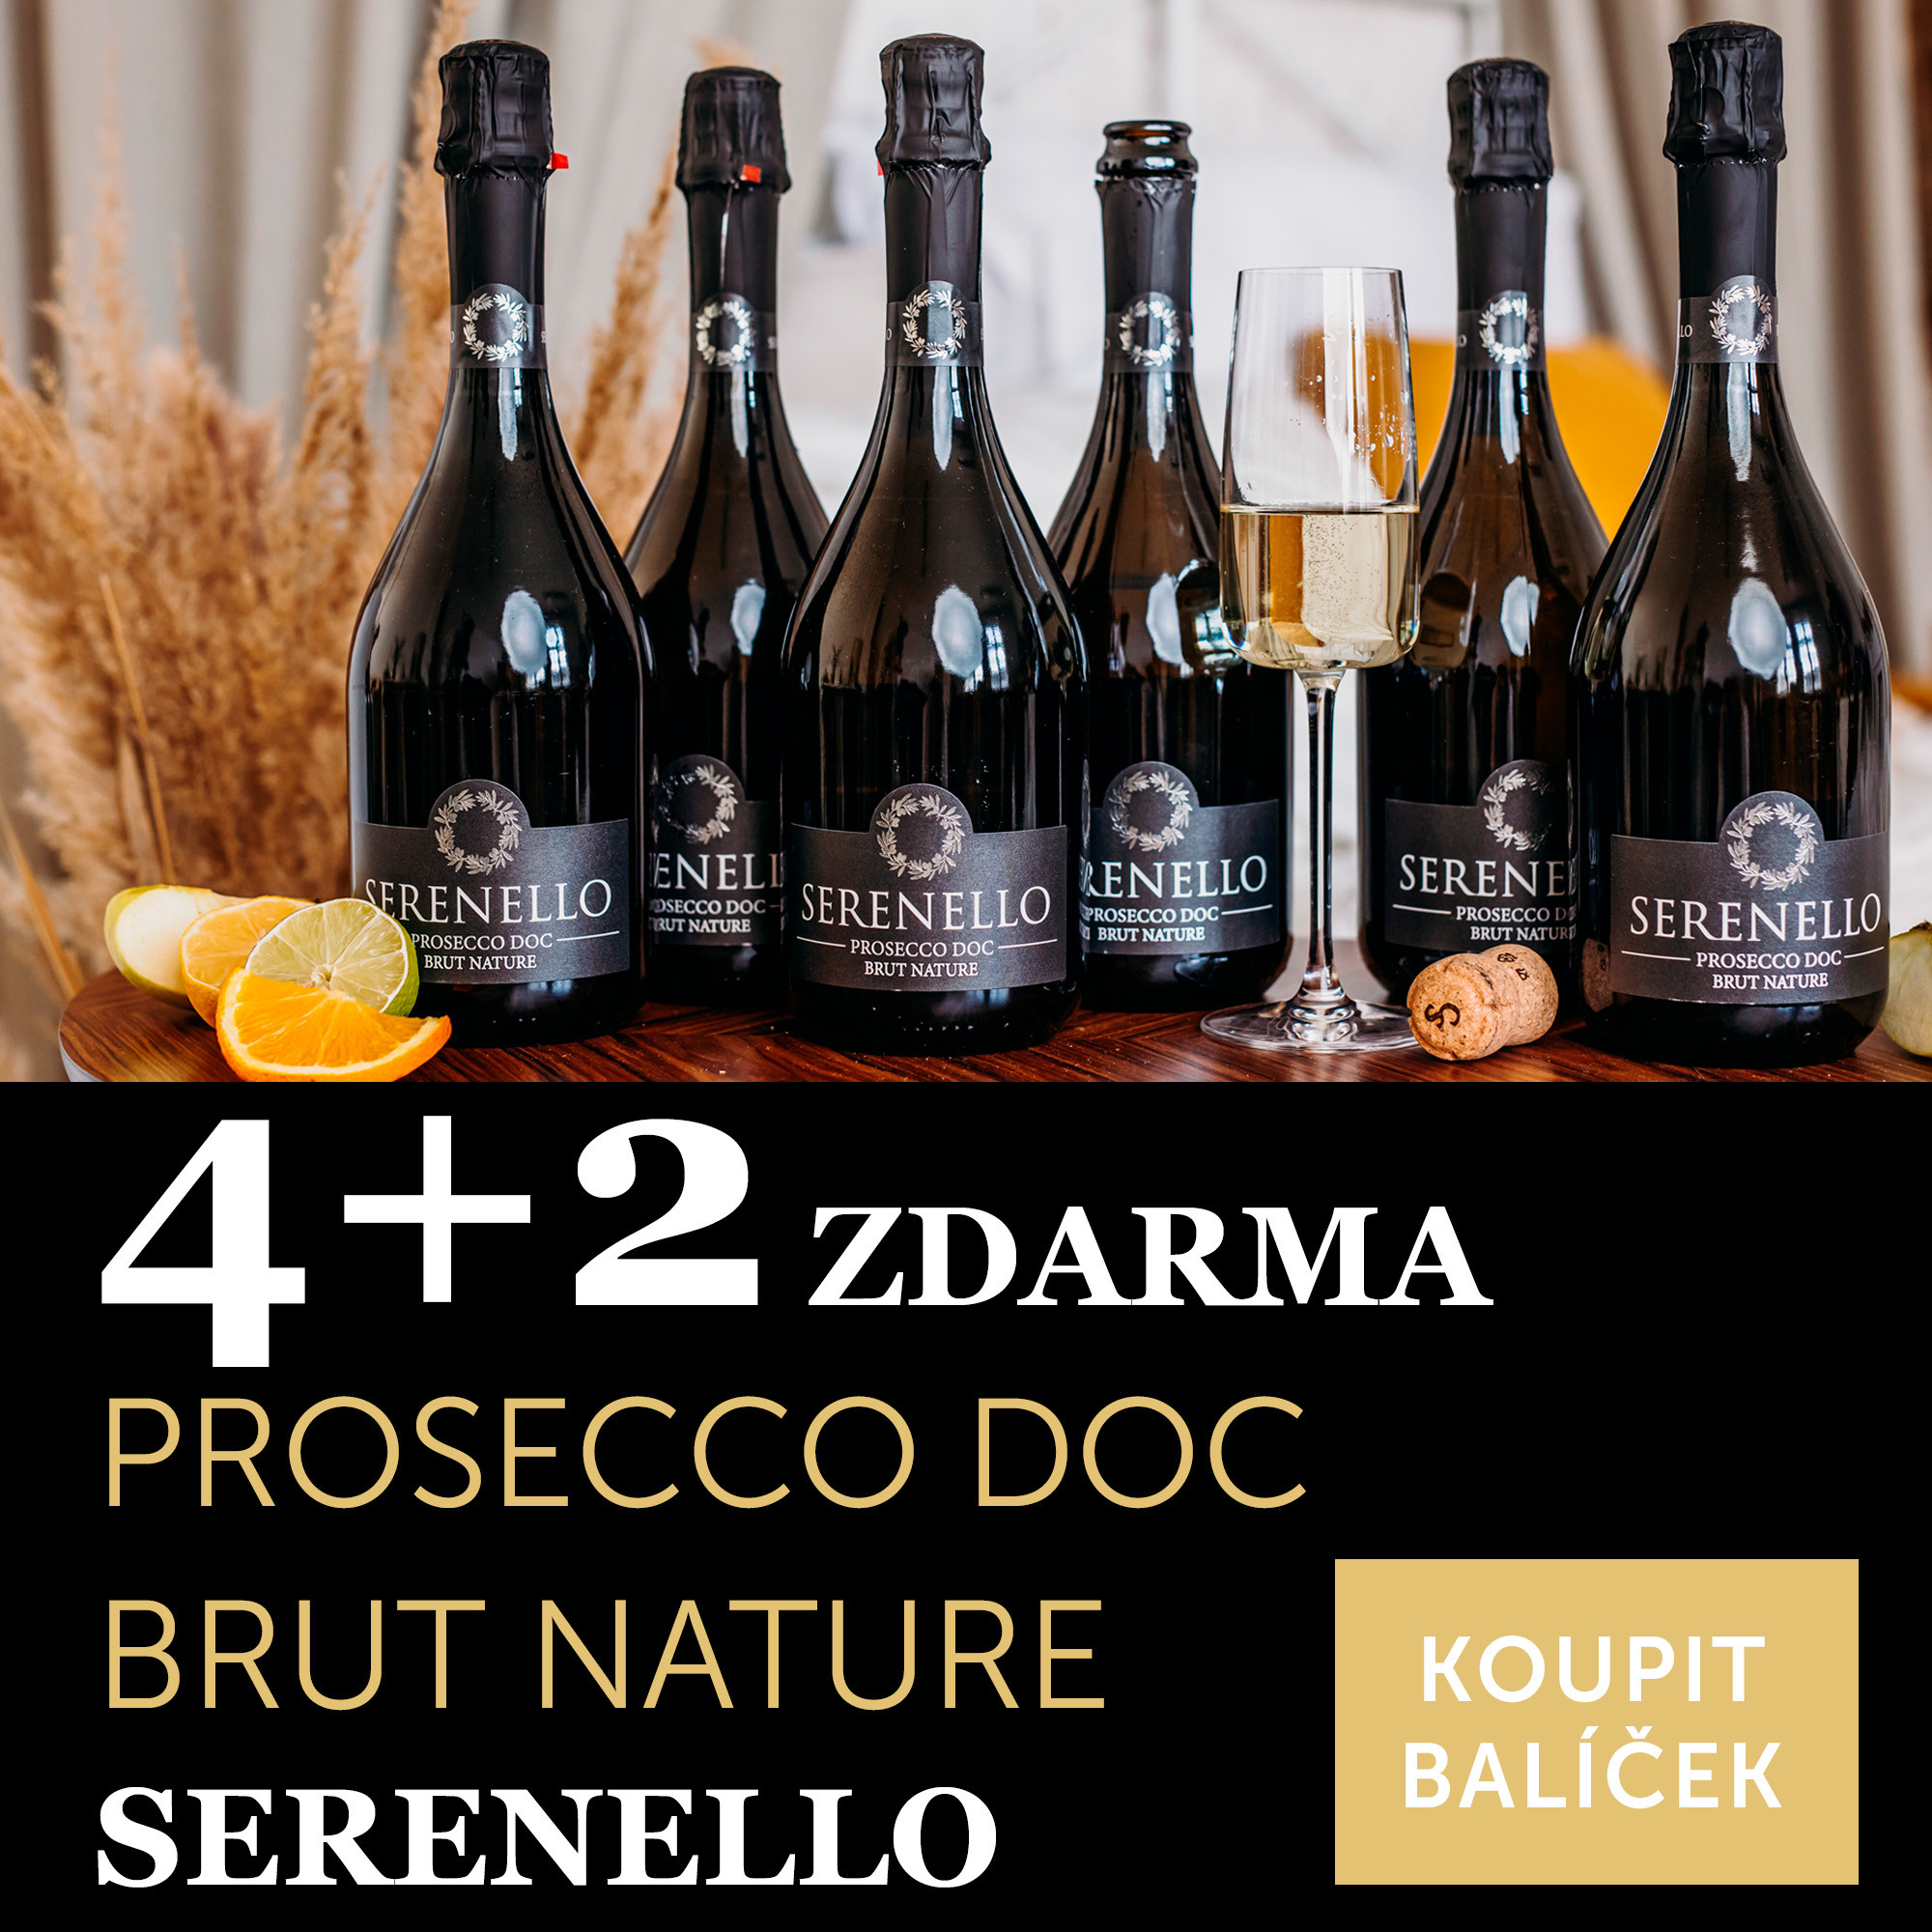 Prosecco DOC brut nature Serenello 4+2 zdarma - UKONČENO